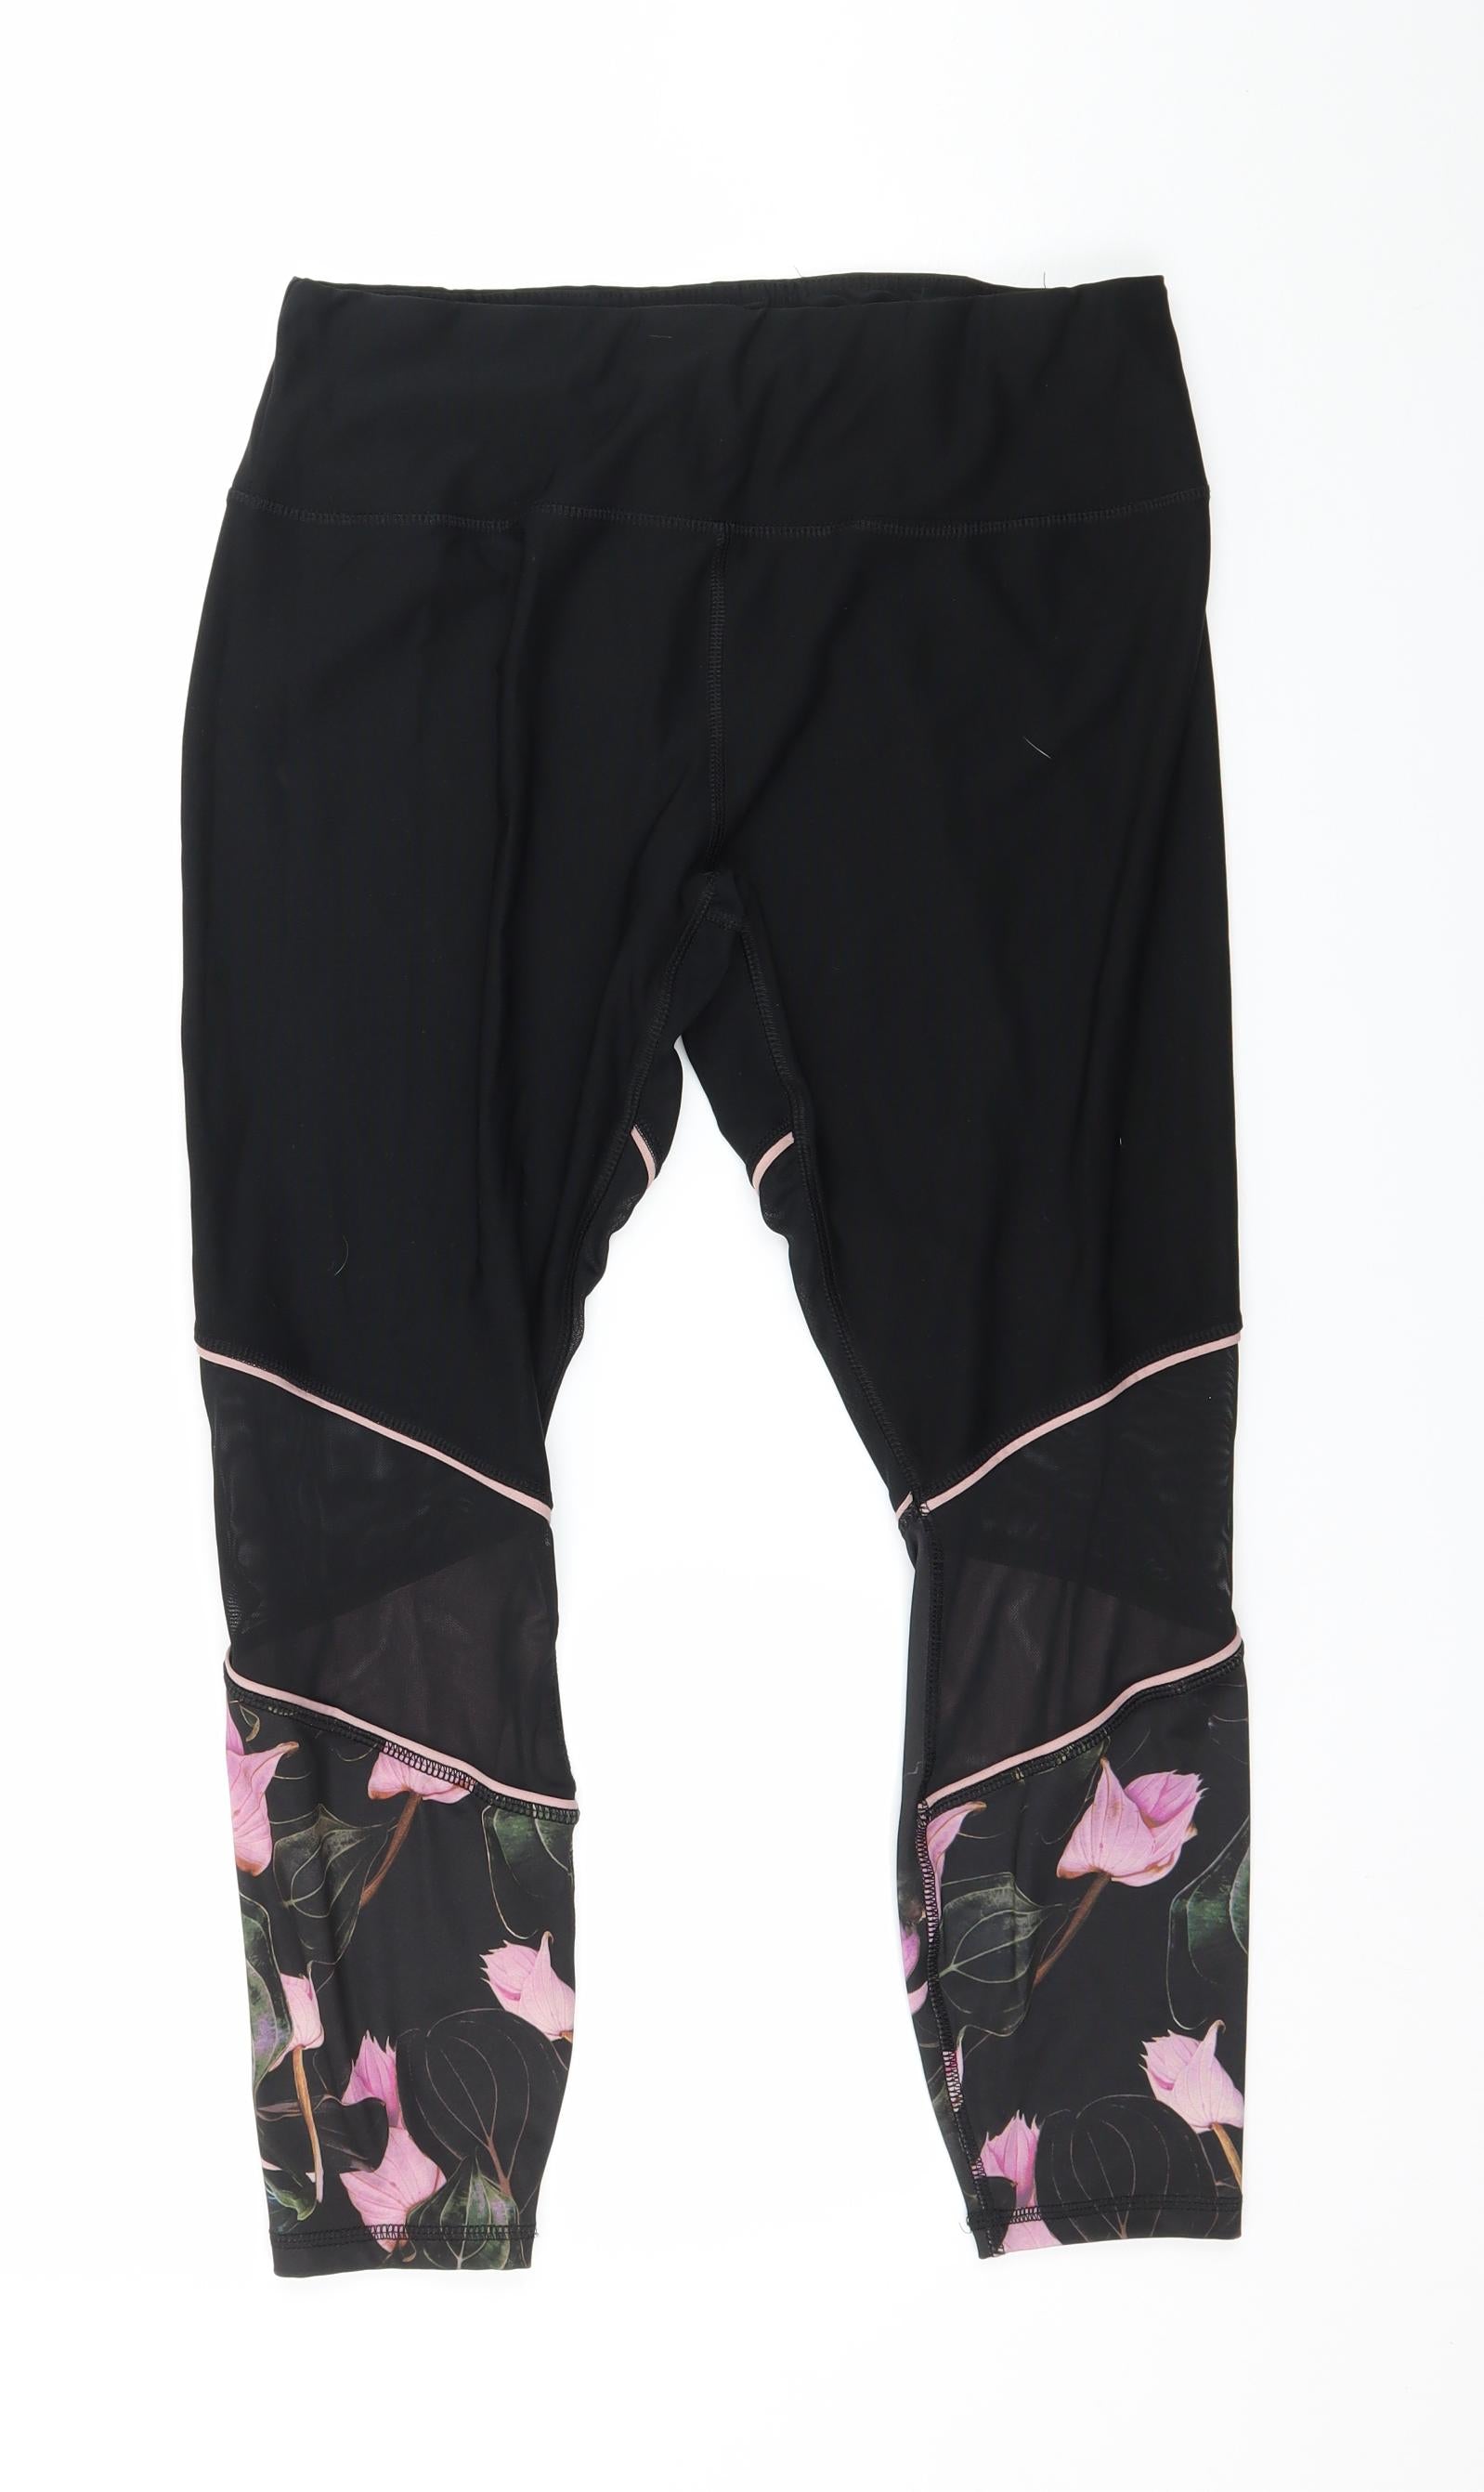 RBX Womens Black Floral Jersey Capri Leggings Size XL L23 in – Preworn Ltd